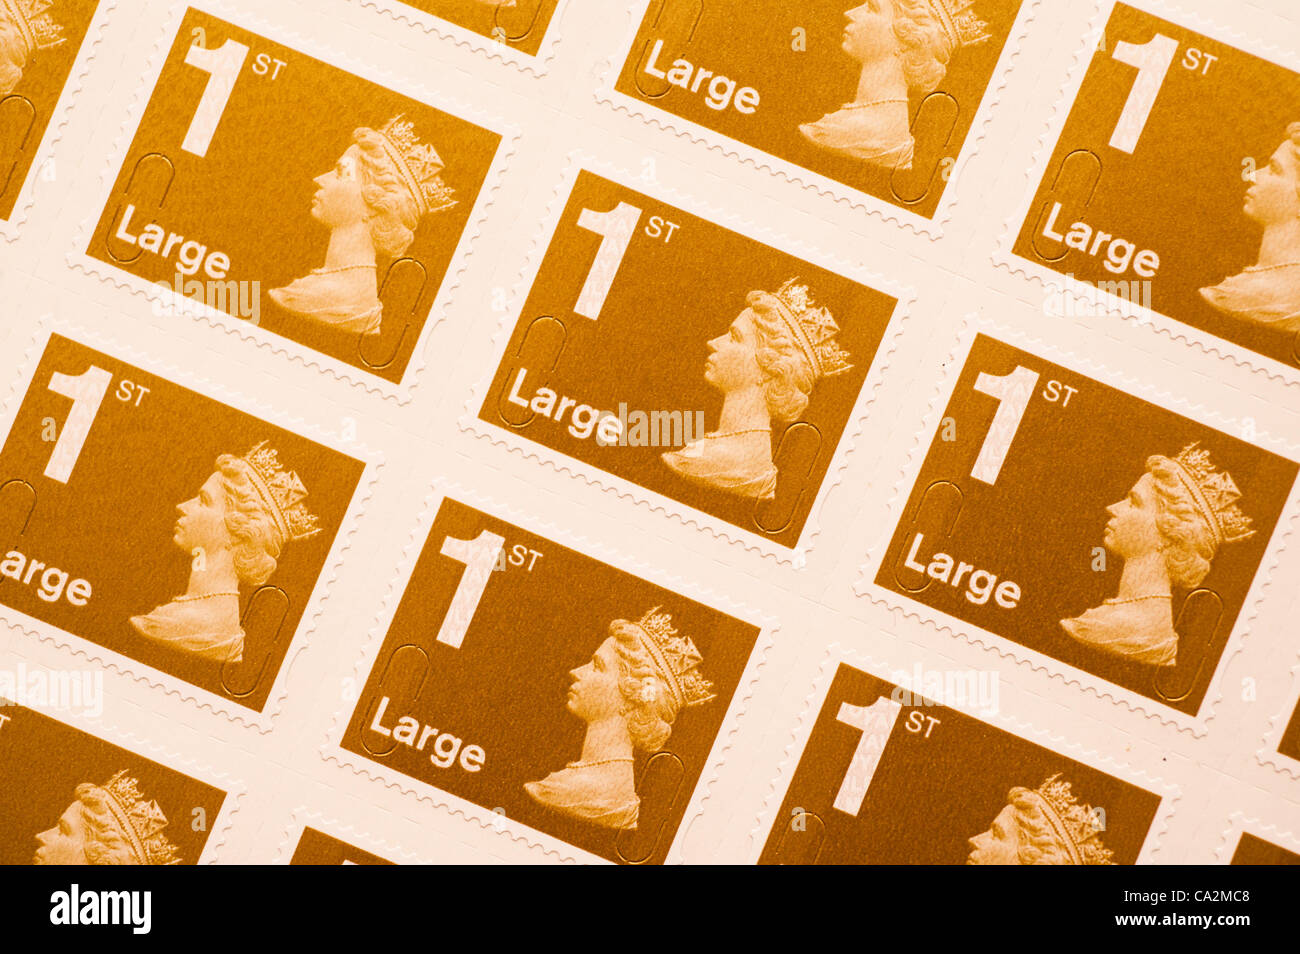 Une grande feuille de timbres de première classe.Ils vont augmenter de 30  % dans le prix de 46p à 60p du 30 avril 2012 après le régulateur britannique allégé de contrôle des prix sur Royal Mail Banque D'Images